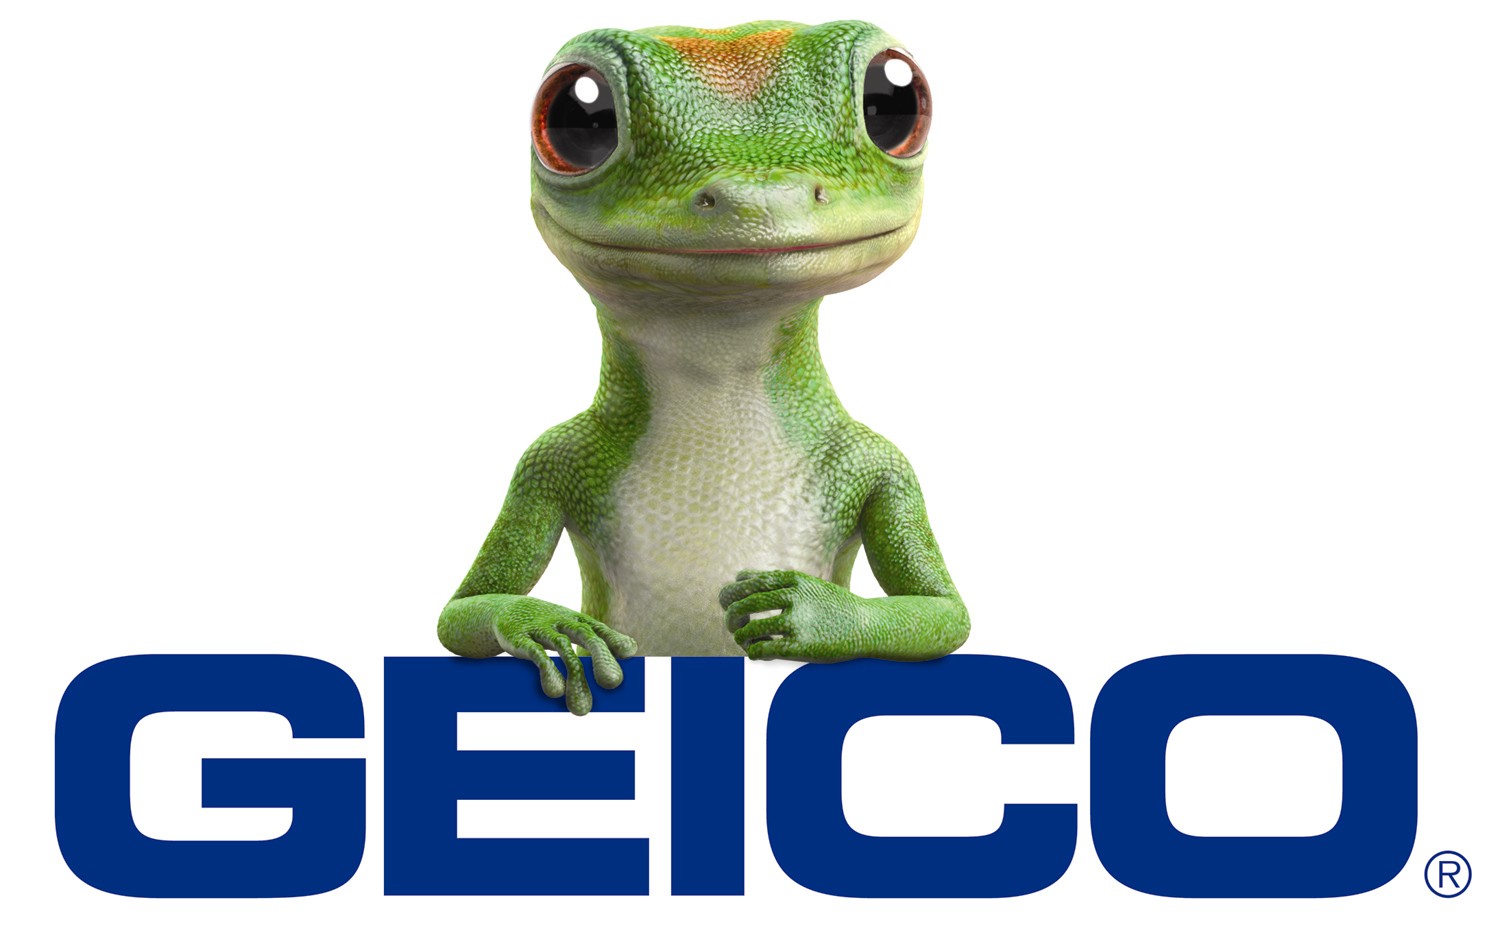 http://carinsuranceguidebook.com/wp-content/uploads/2008/10/geico-logo-with-gecko.jpg